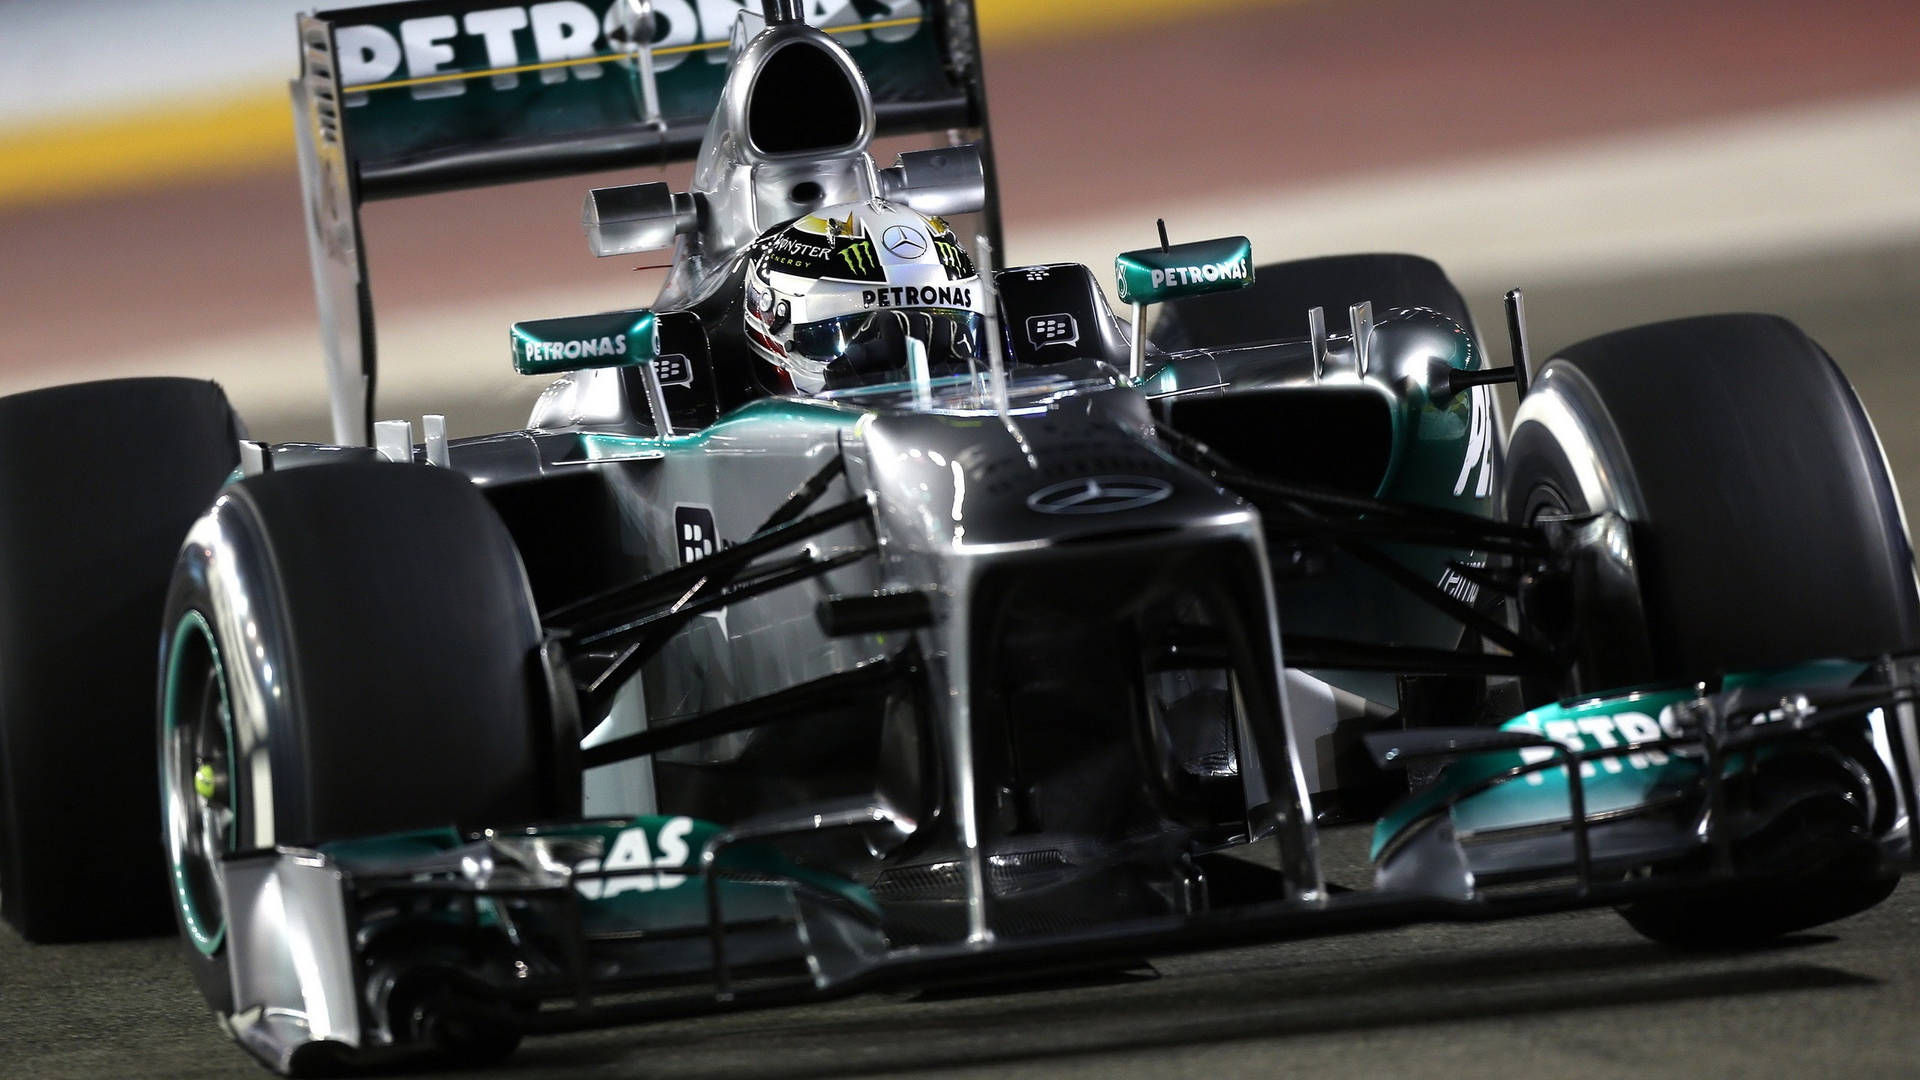 Lewishamilton Feiert Nach Dem Gewinn Seines Sechsten Weltmeistertitels In Der Formel 1. Wallpaper